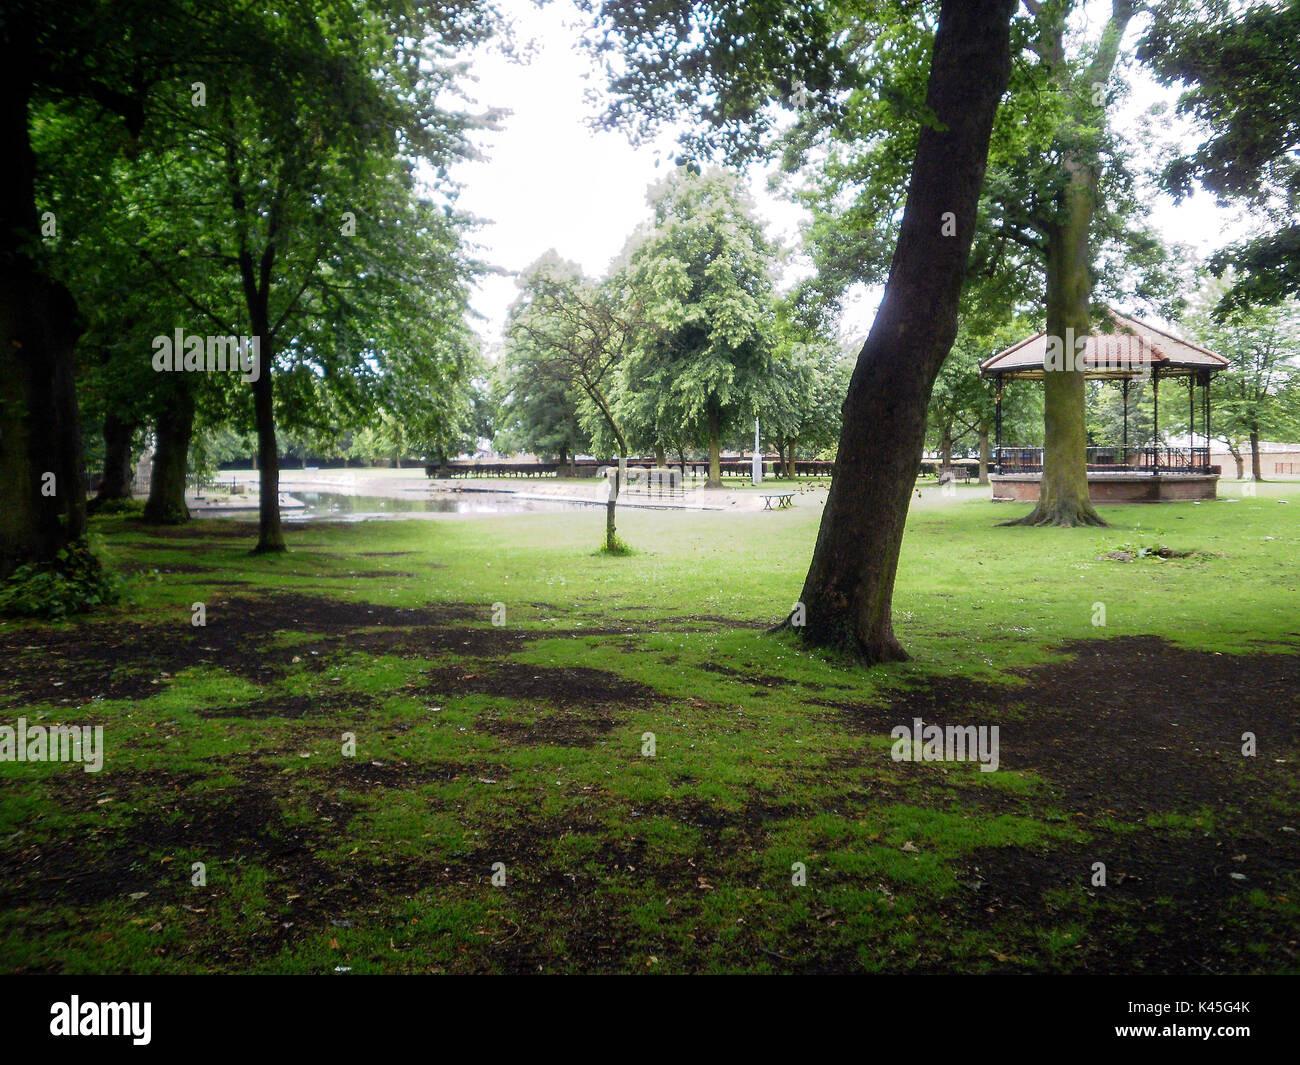 Romantische Park Tree Setting, Pavillon, Ententeich, grüner Hintergrund mit Muddy Patch Grass und mehrere Bäume, malerischer Park, Natur Setting Stockfoto